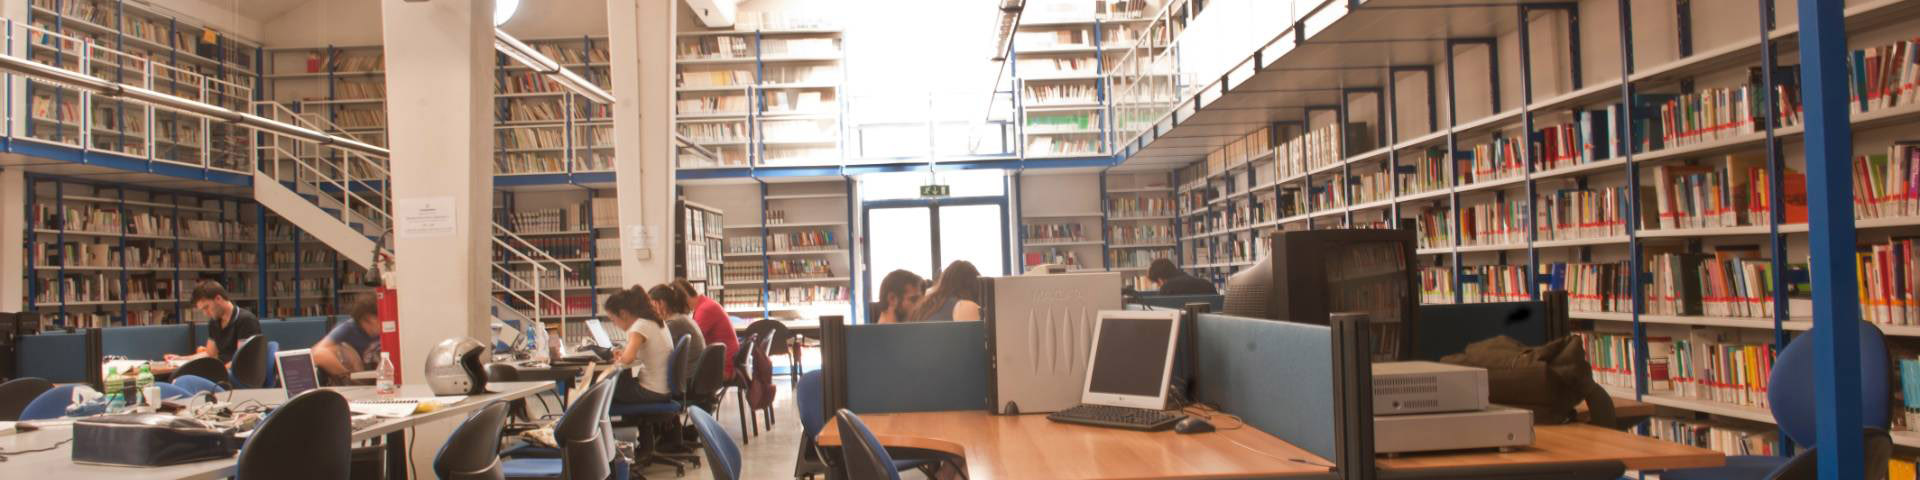 immagine della Prato Campus Library